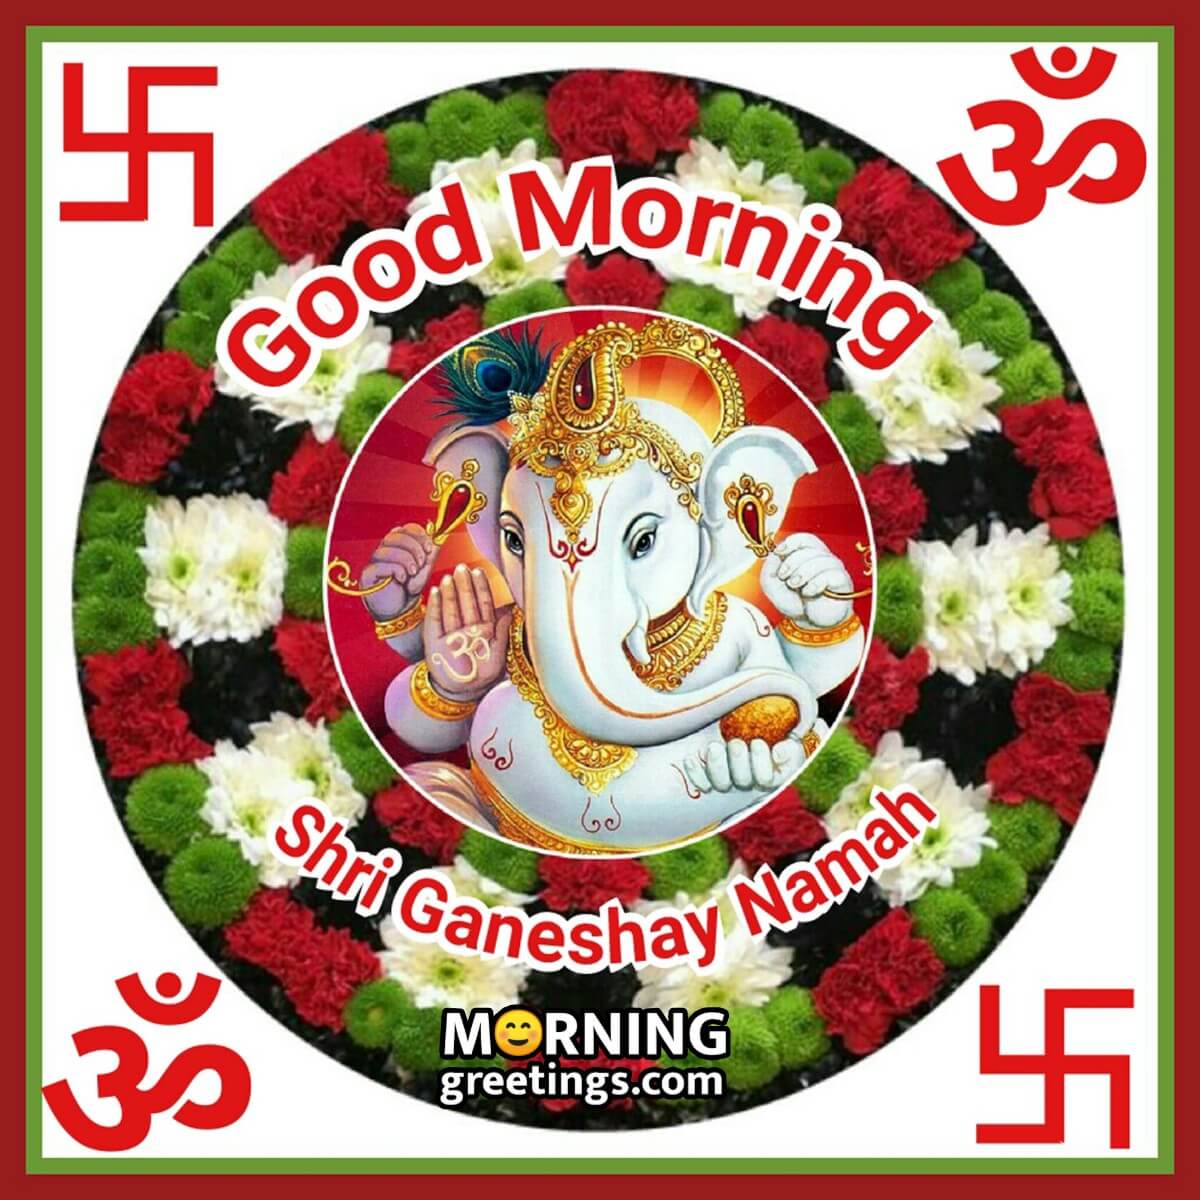 Good-Morning-Shri-Ganeshay-Namah.jpg